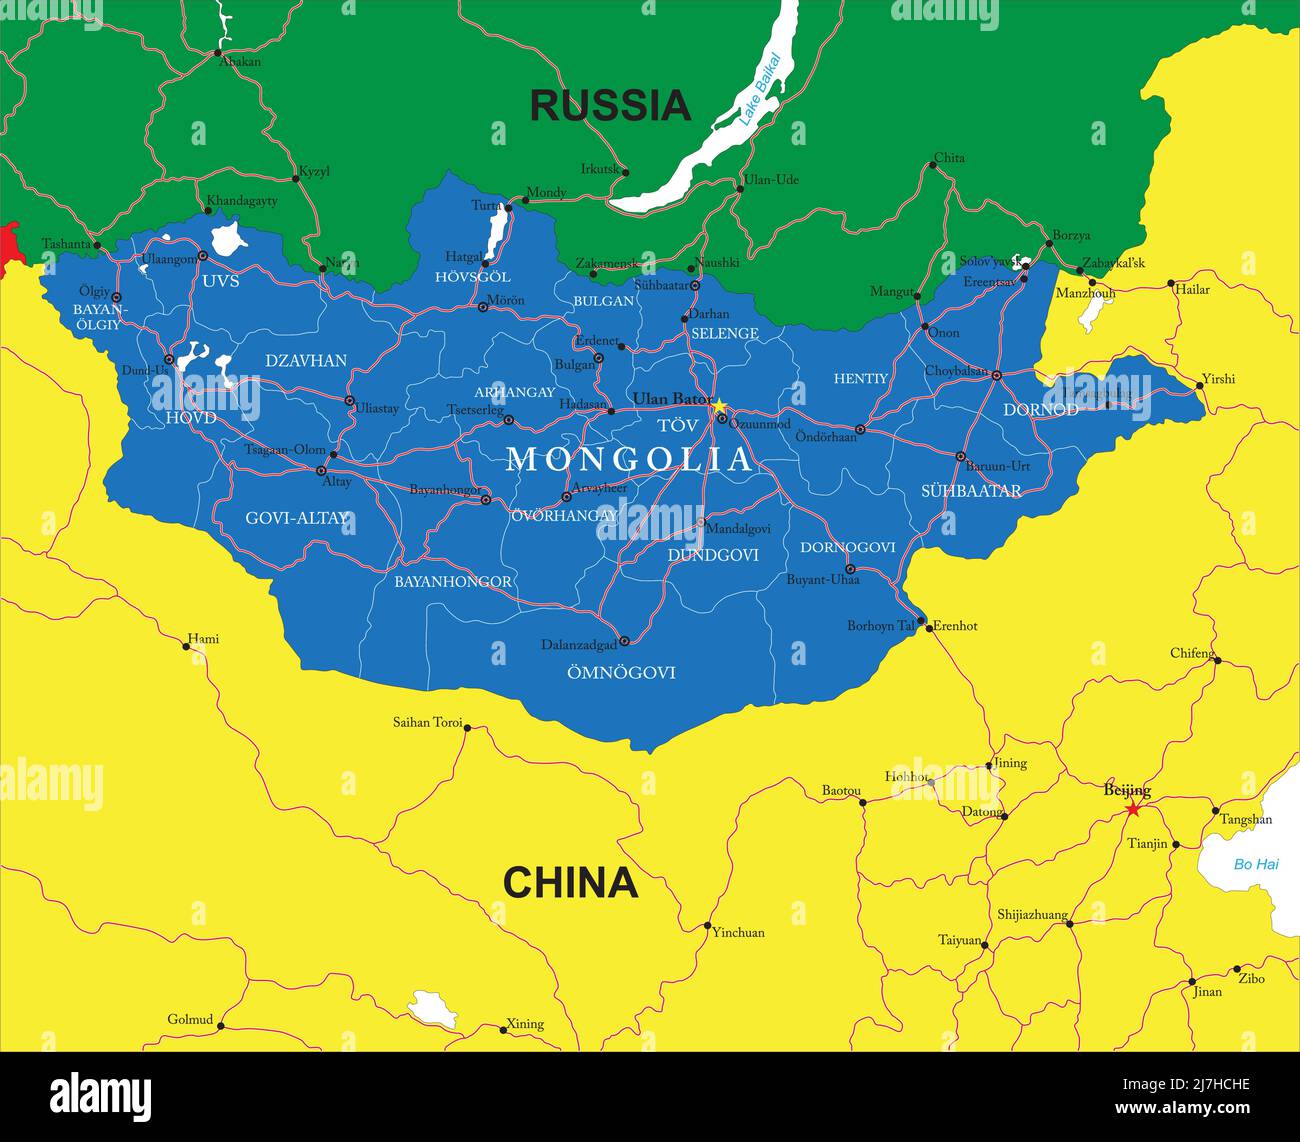 Mongolia Mappa vettoriale molto dettagliata con regioni amministrative, città principali e strade. Illustrazione Vettoriale